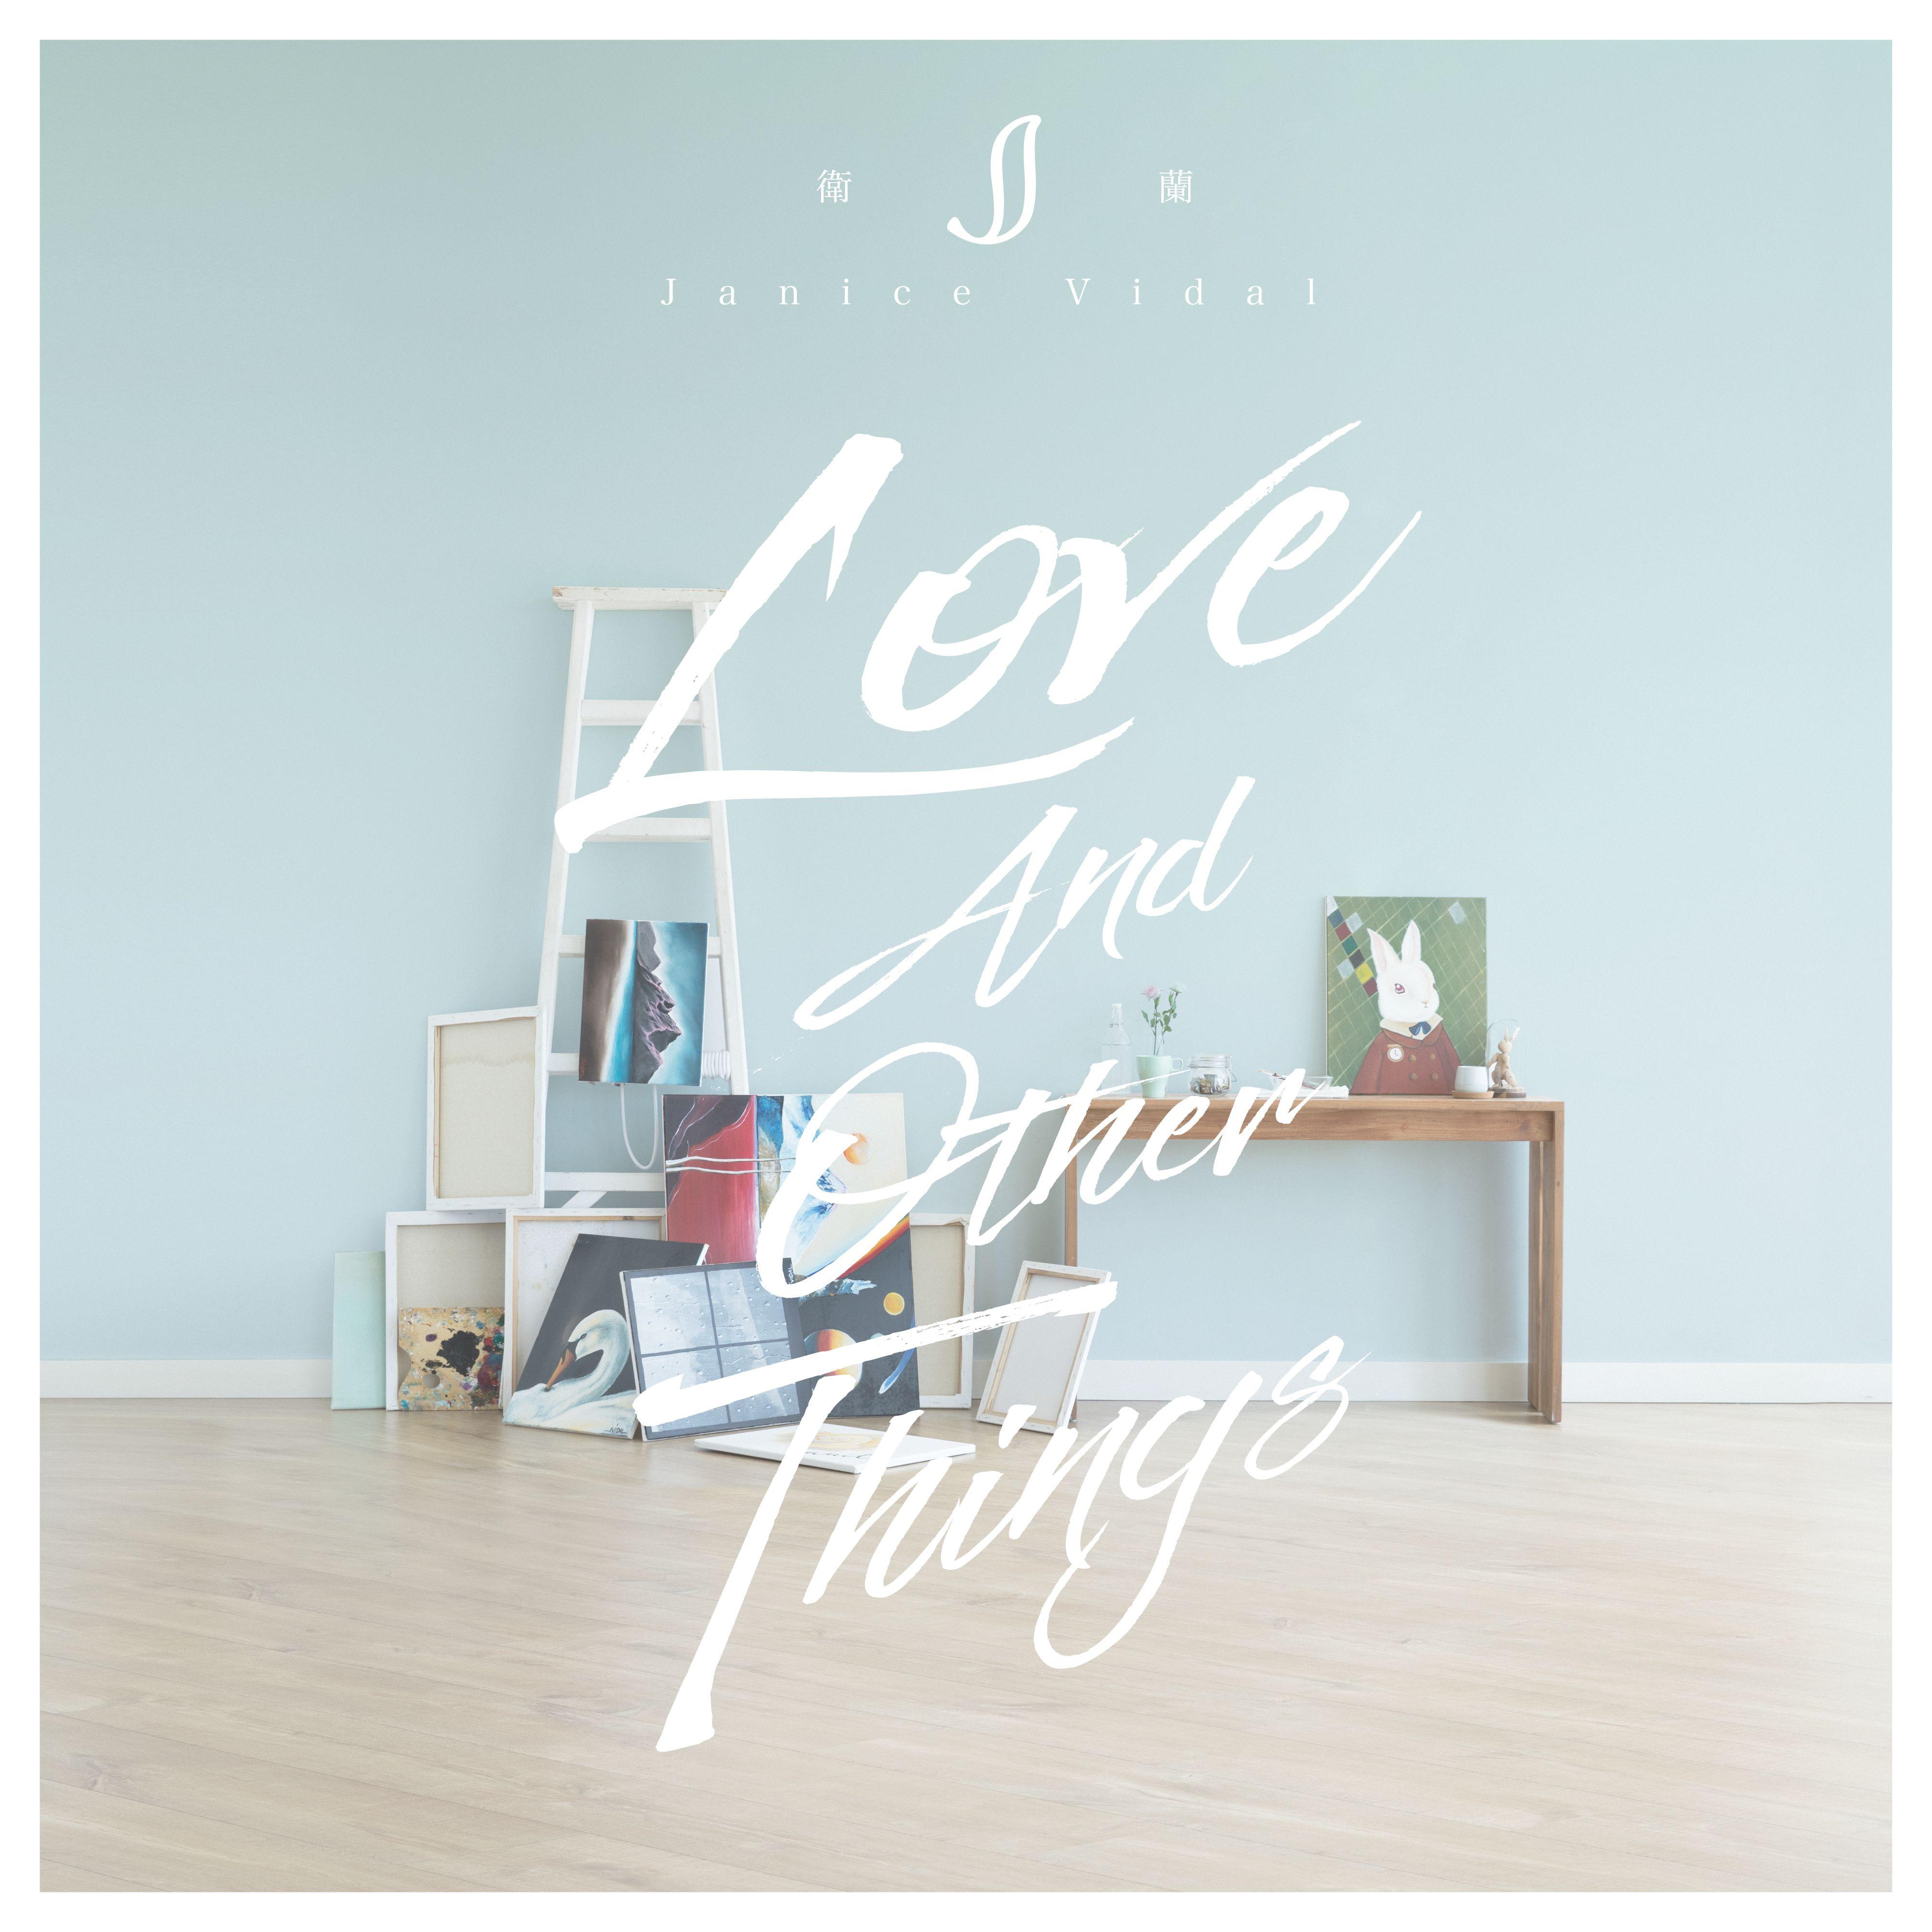 差半步歌词 歌手卫兰-专辑Love And Other Things-单曲《差半步》LRC歌词下载